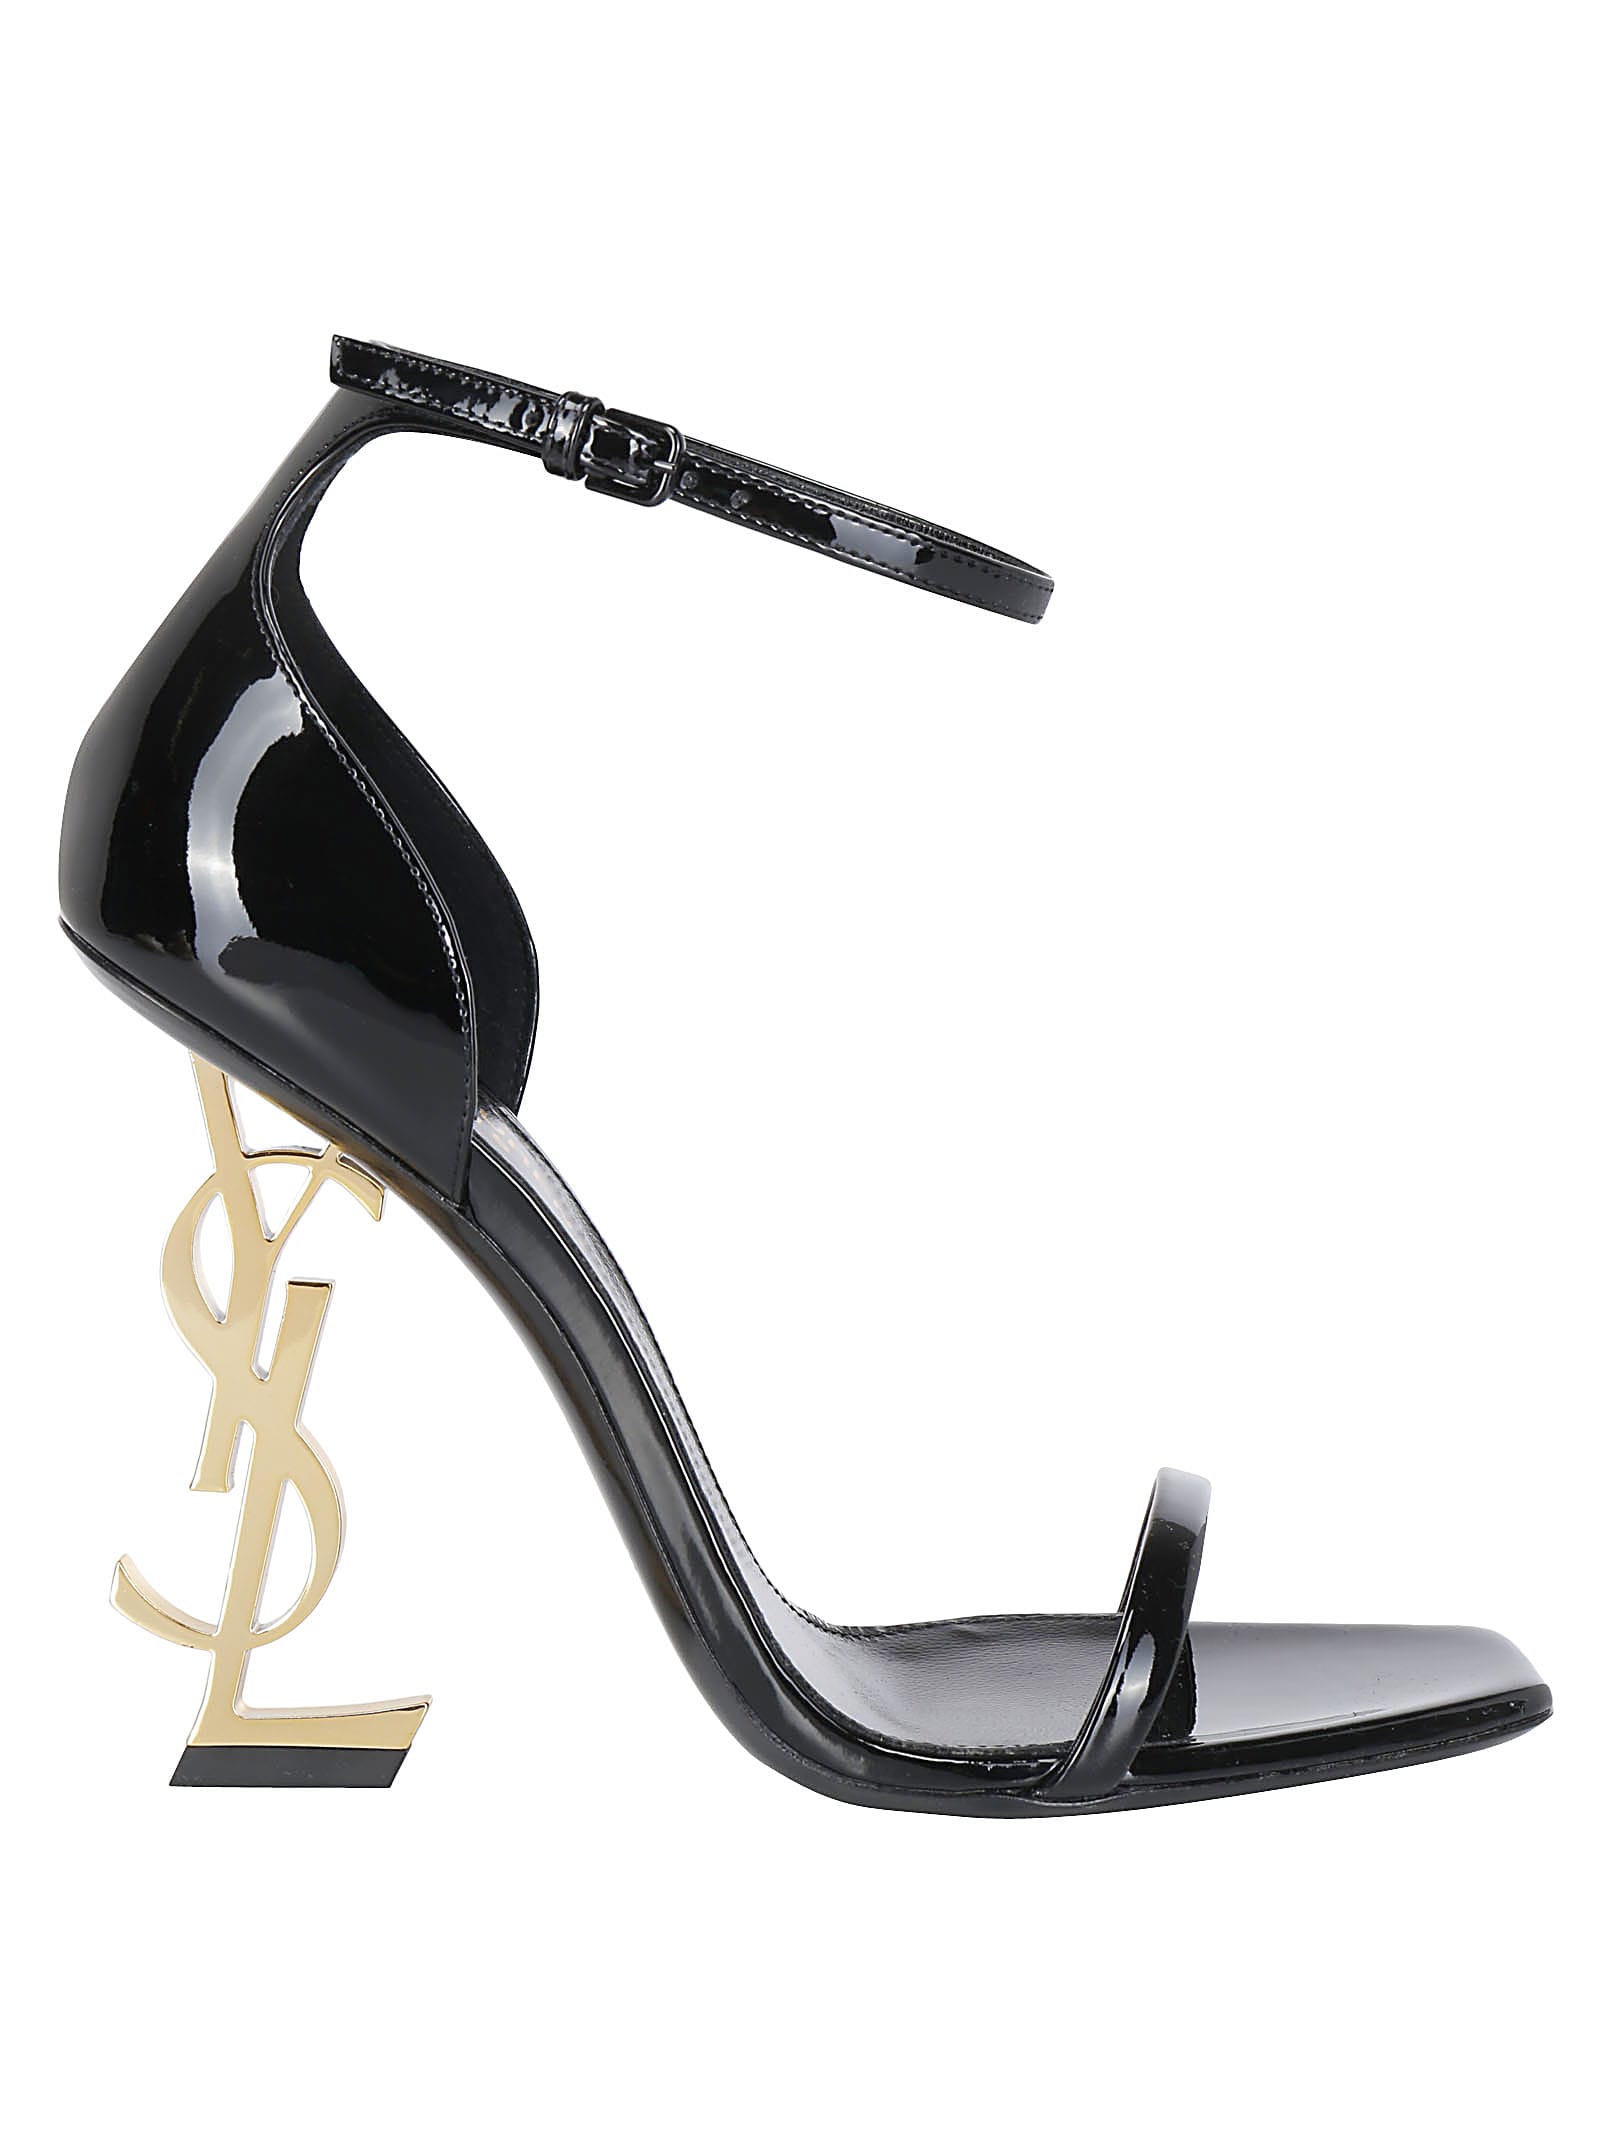 Buy Saint Laurent Opyum 110 Sandals online, shop Saint Laurent shoes with free shipping